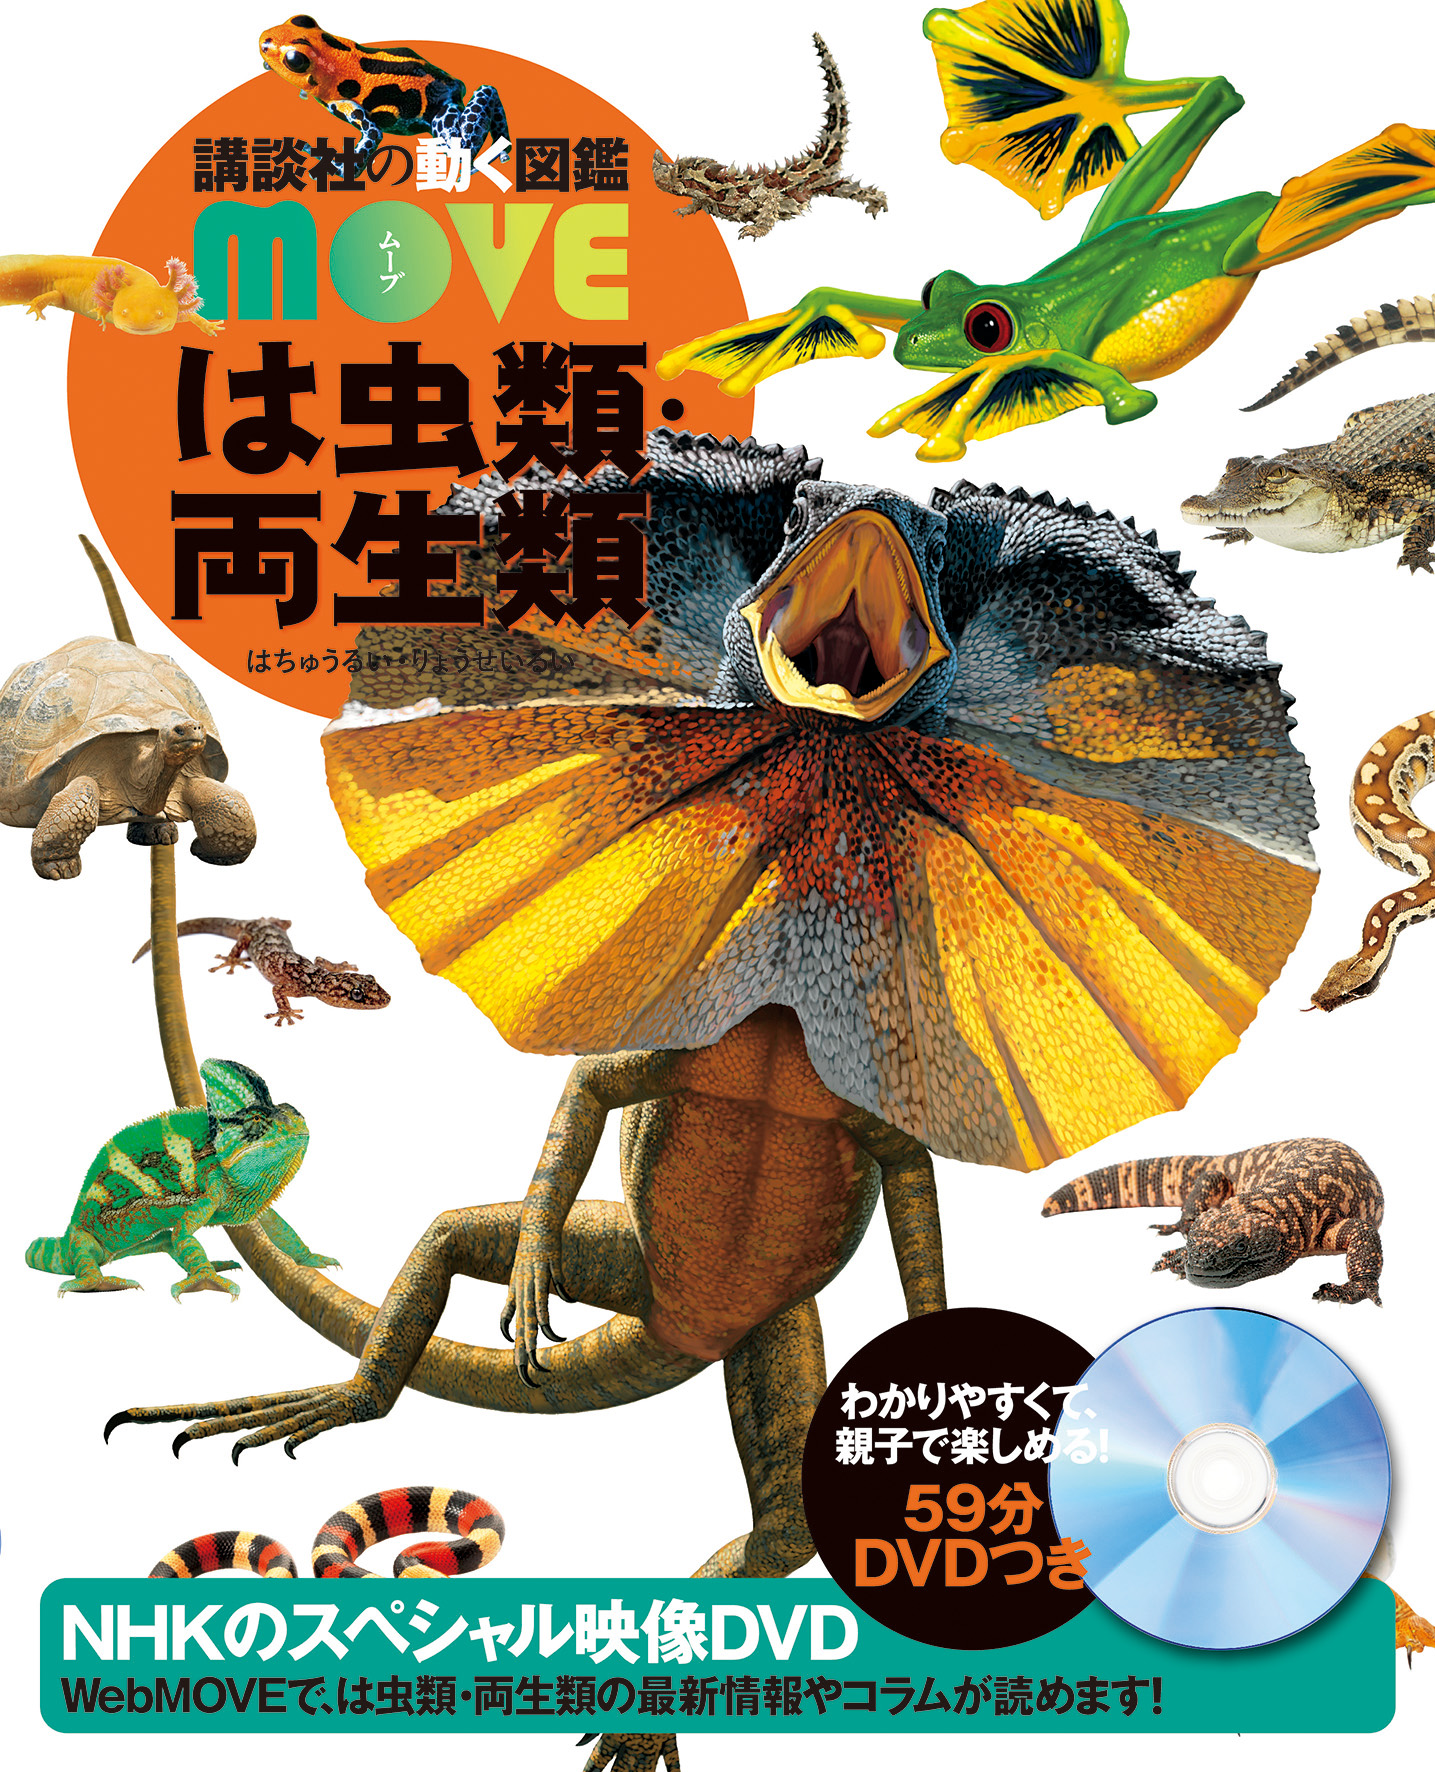 講談社の動く図鑑 Move は虫類 両生類 講談社の動く図鑑 Move Nhkのスペシャル映像dvd付き